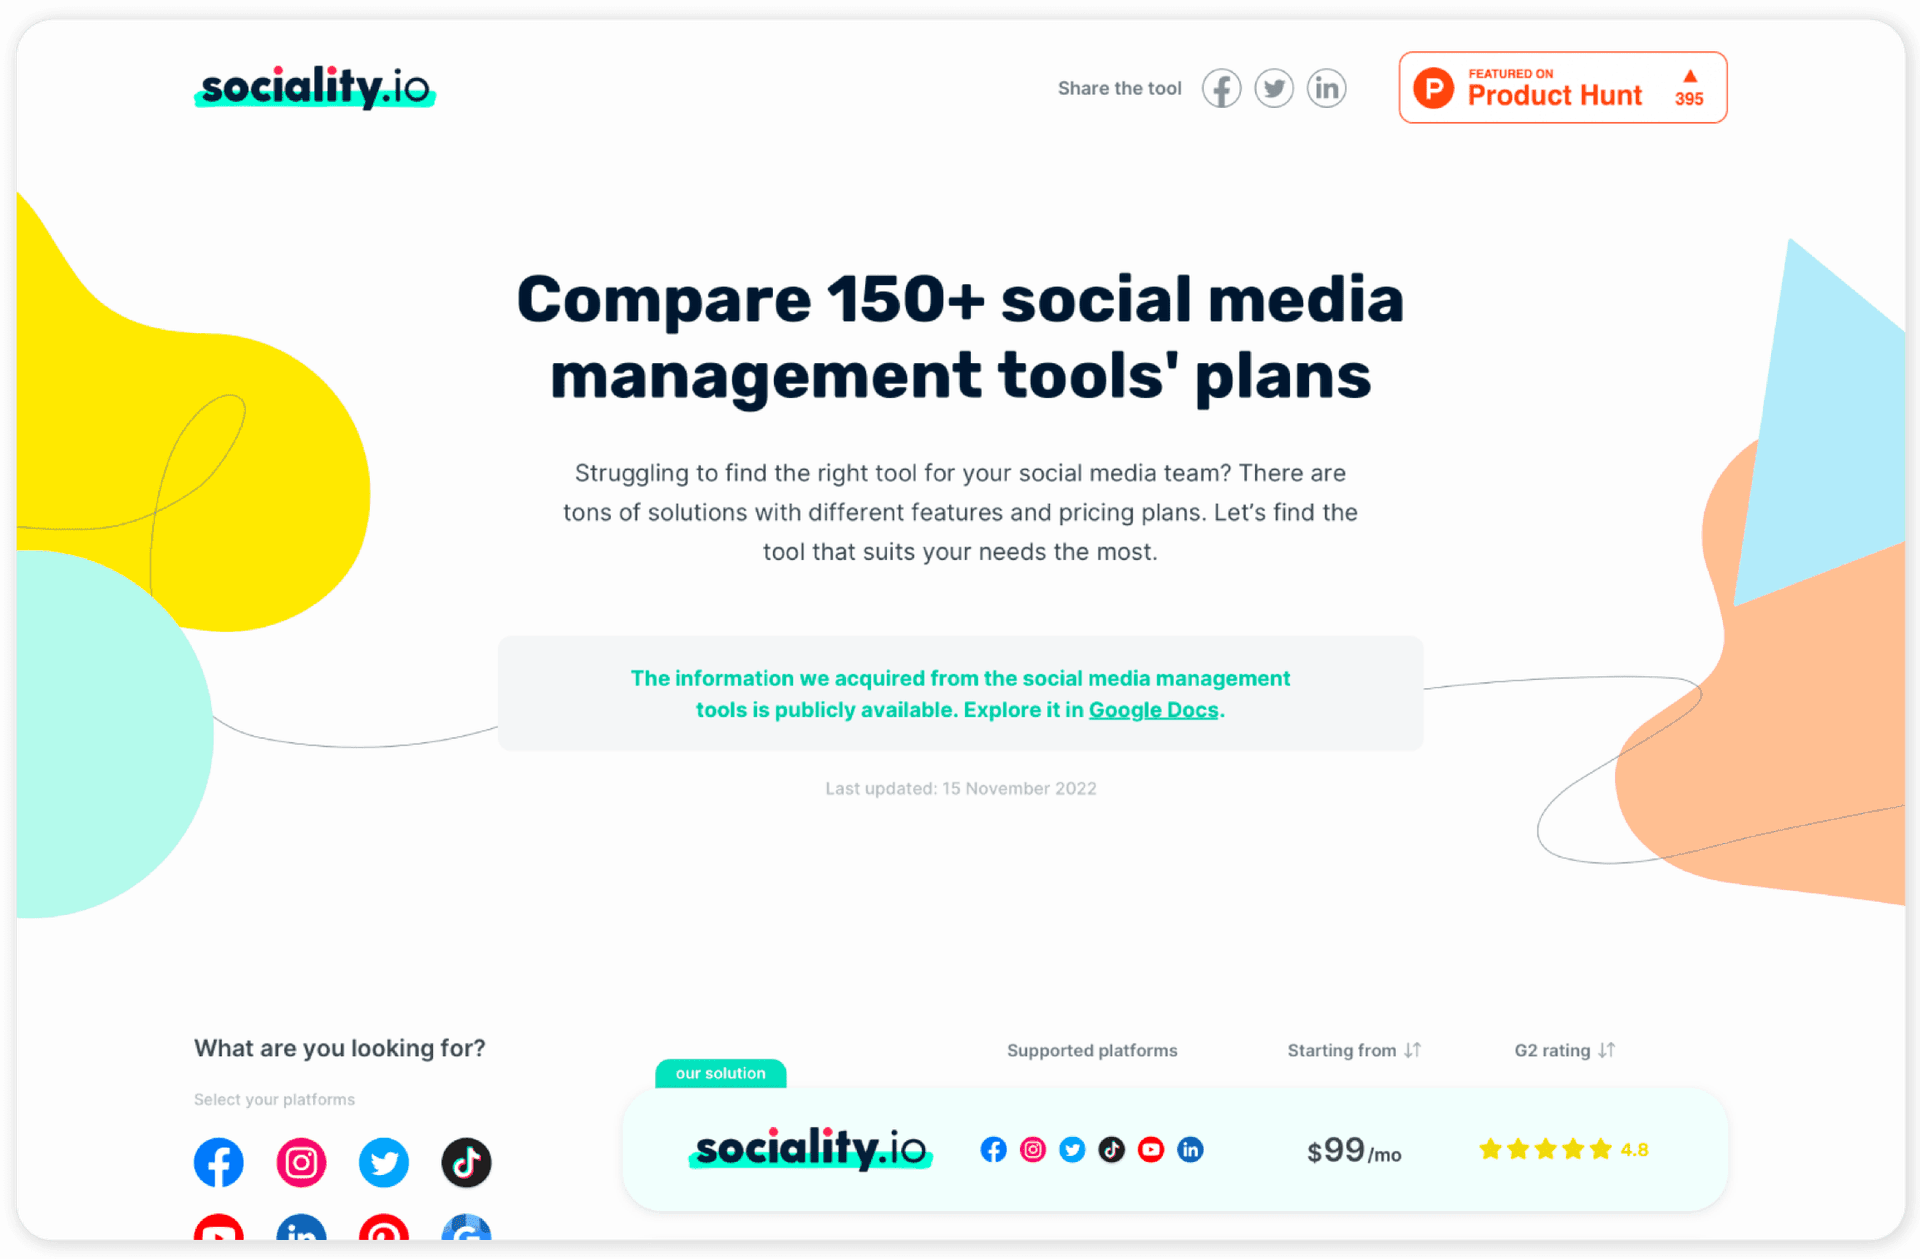 Compare 150+ social media management tools plans - Social media tools comparison by Sociality.io